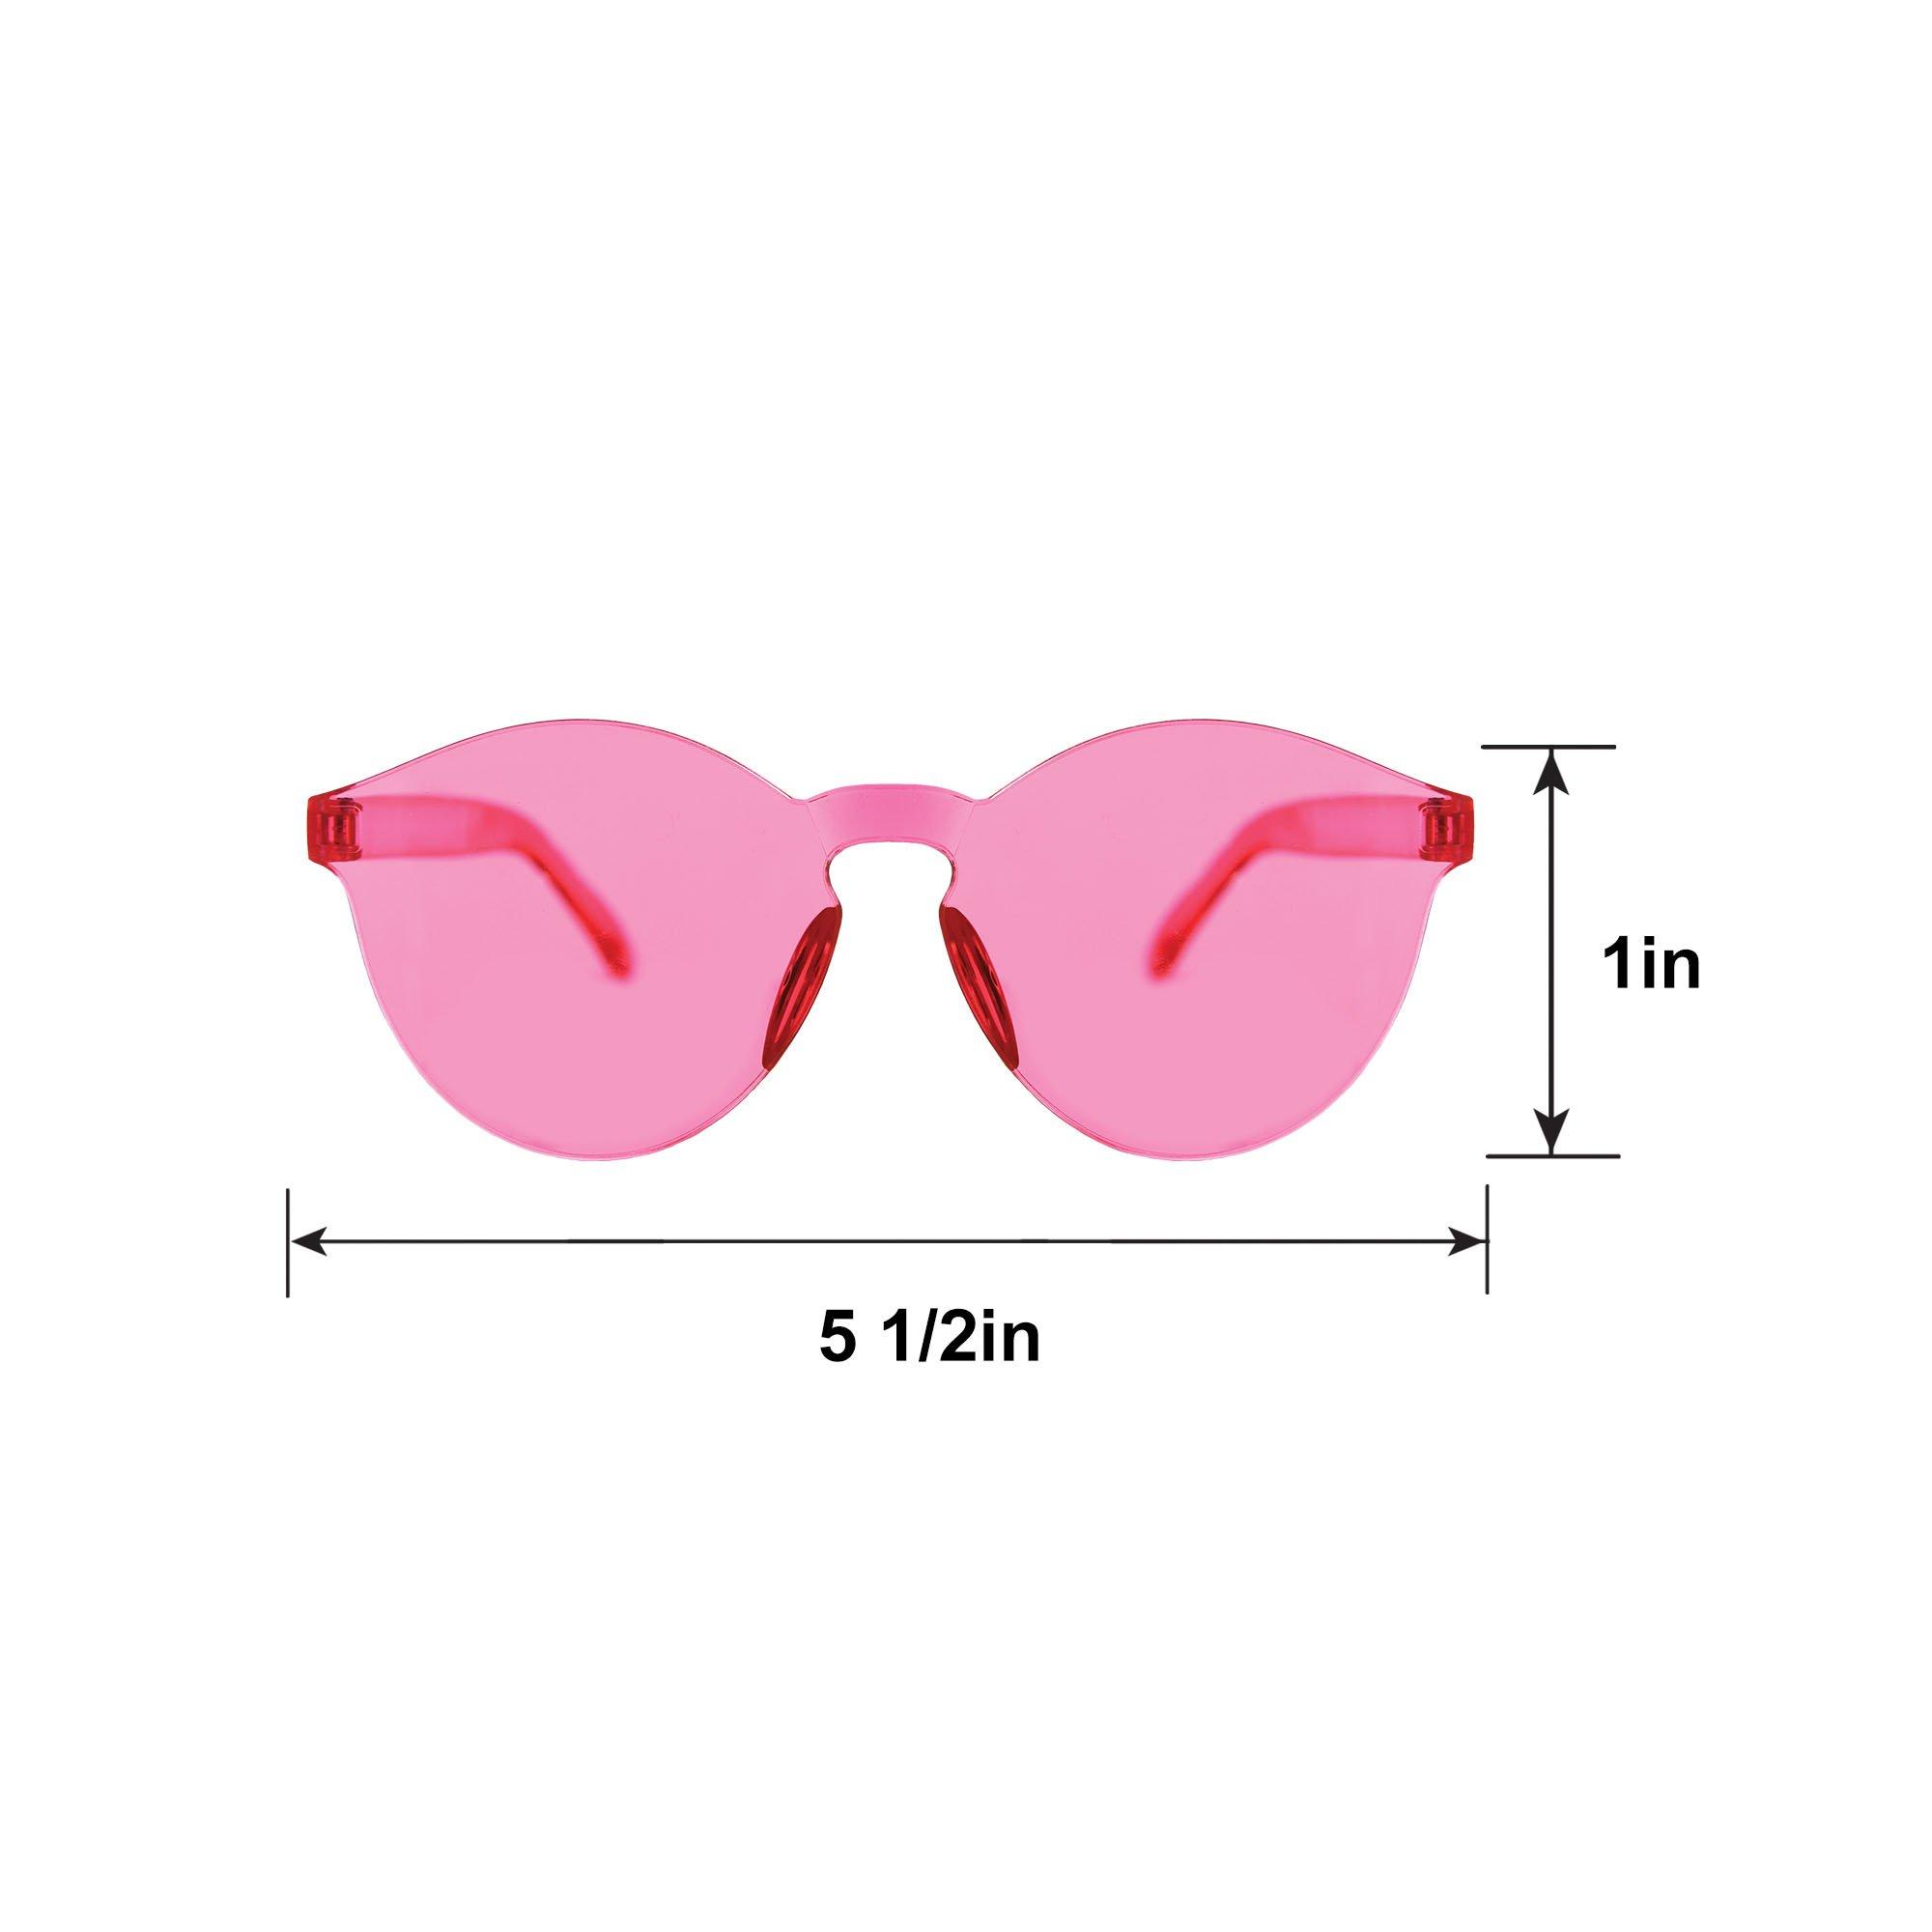 Frameless Bright Pink Glasses